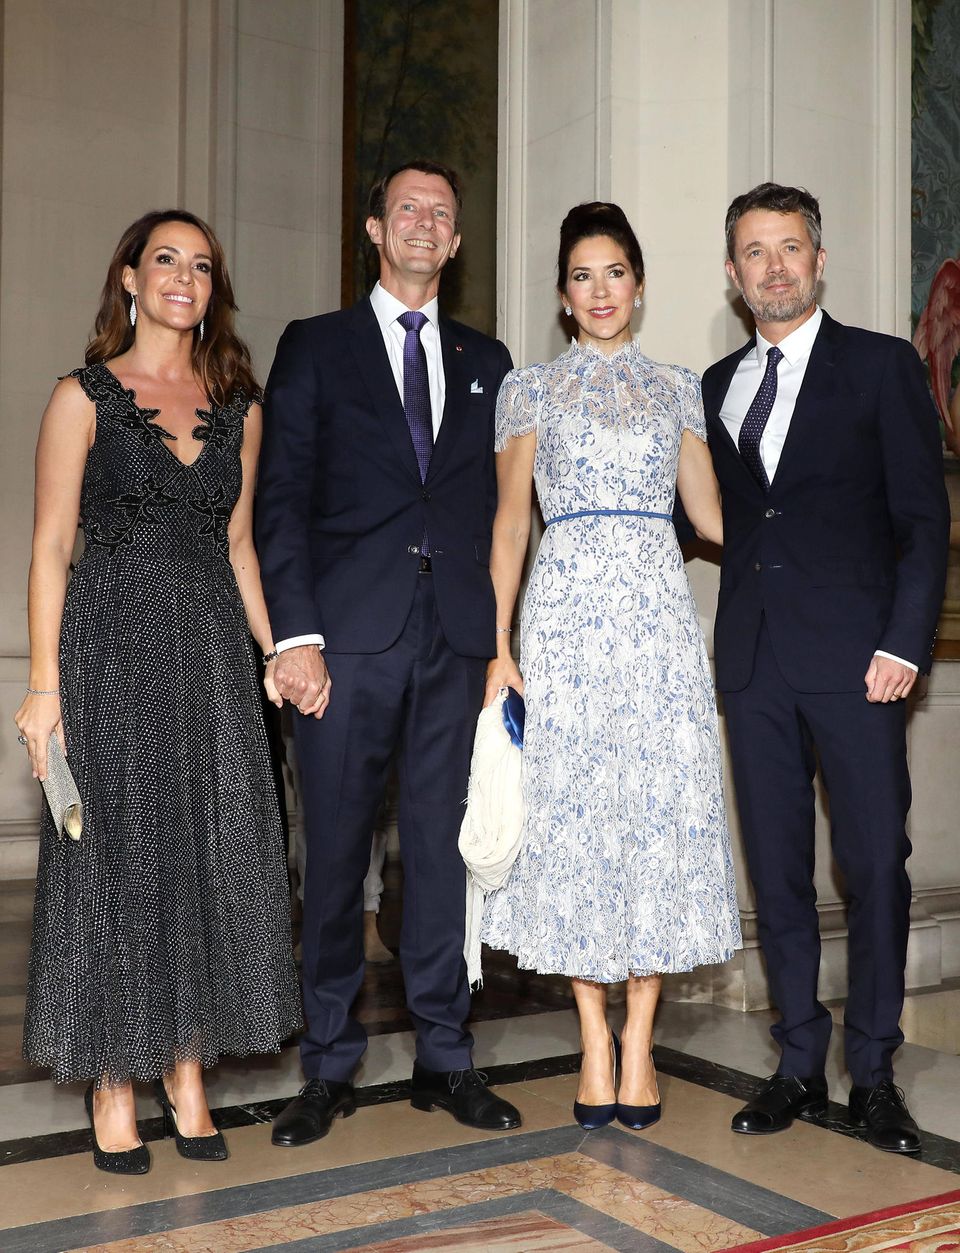 8. Oktober 2019  Im Pariser Rathaus hat der dänische Botschafter am Abend zum Dinner eingeladen. Ehrengäste sind Kronprinzessin Mary und Kronprinz Frederik, die dort auf Prinz Joachim und Prinzessin Marie treffen - vermutlich das erste Wiedersehen der Paare, seitdem Marie und Joachim nach Paris gezogen sind.